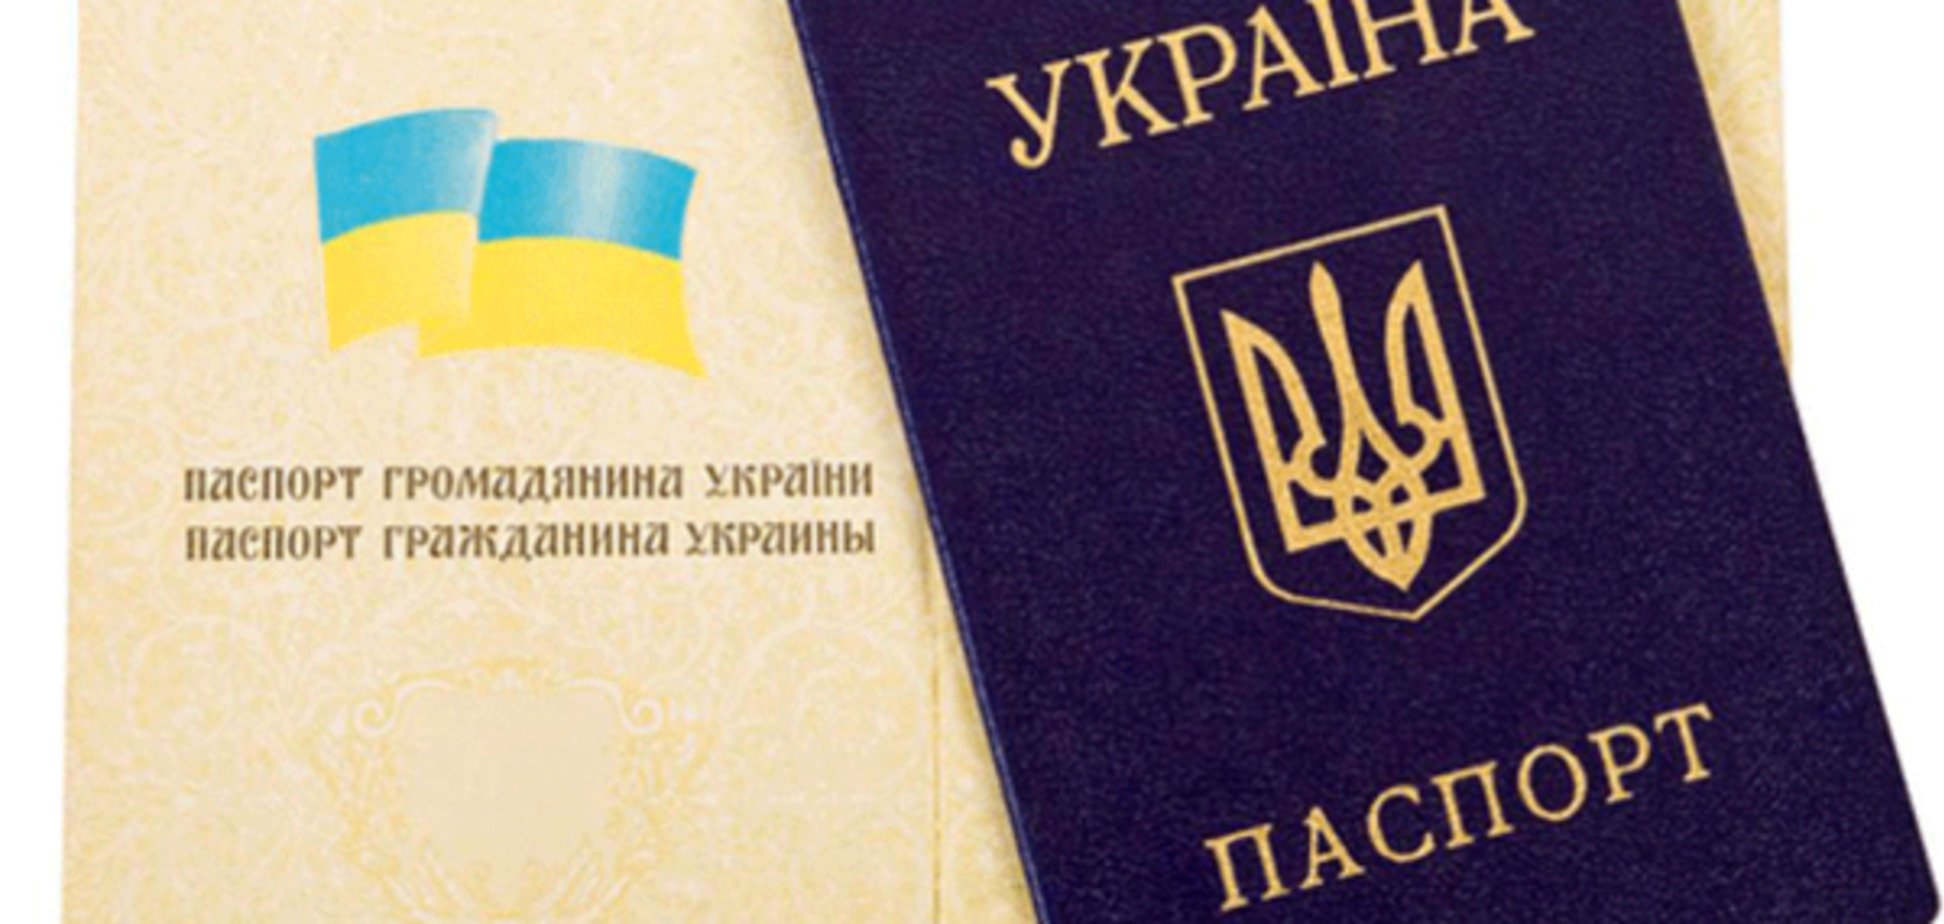 В Украине инициировали возвращение графы 'национальность' во все документы